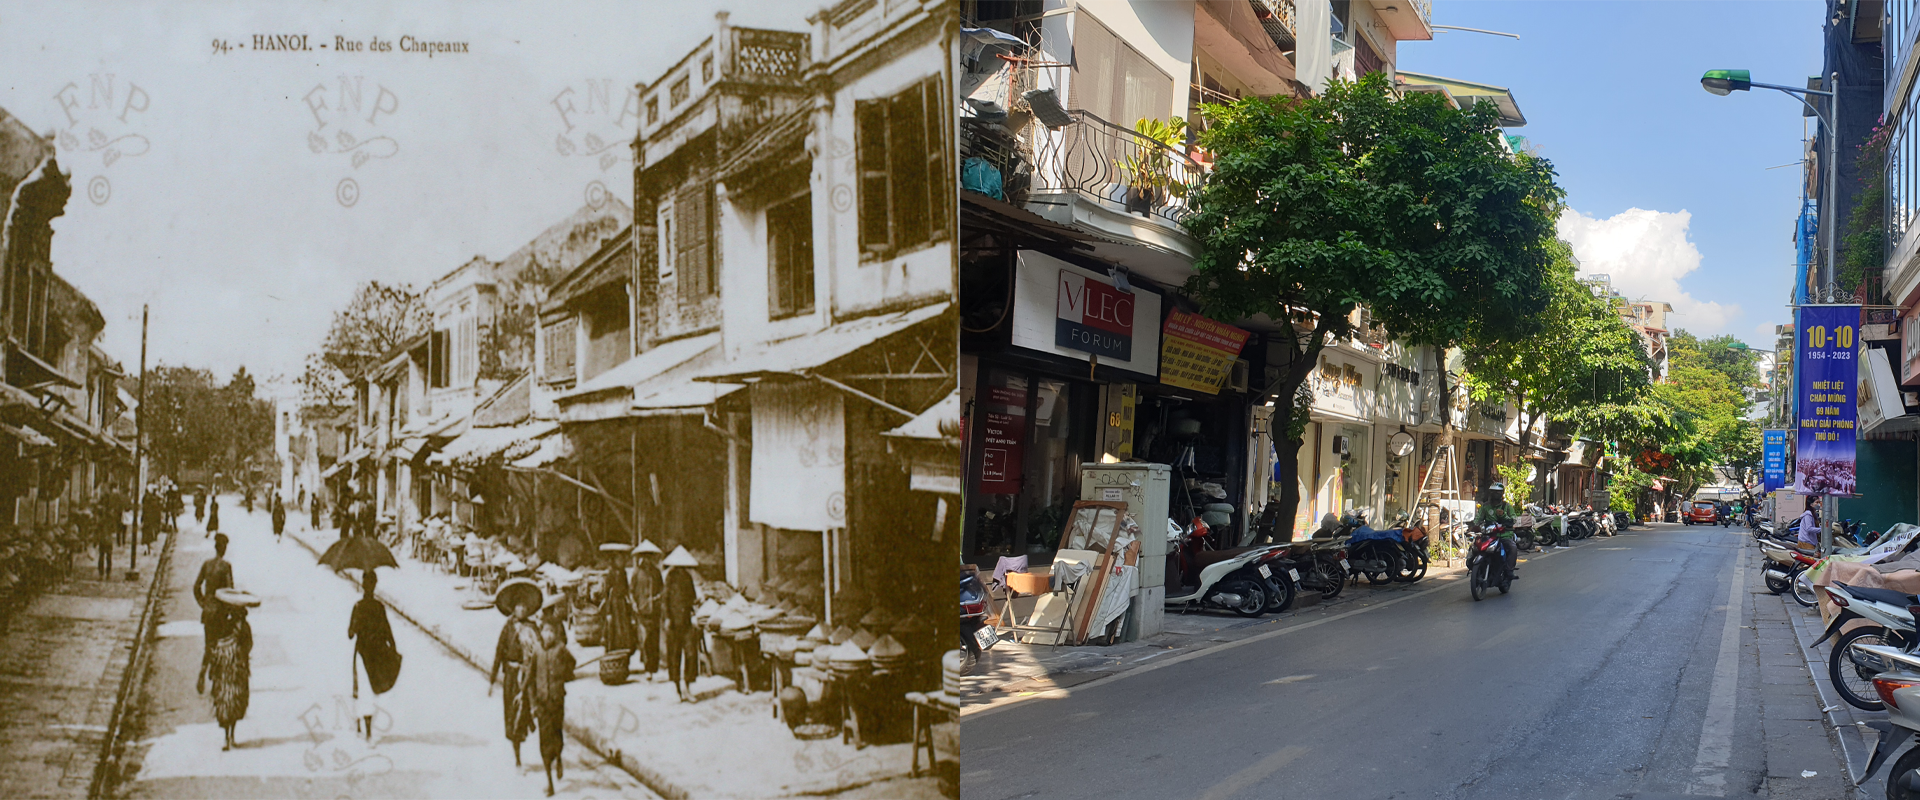 Những hình ảnh thú vị về sự đổi thay của Hà Nội sau 100 năm - Ảnh 2.